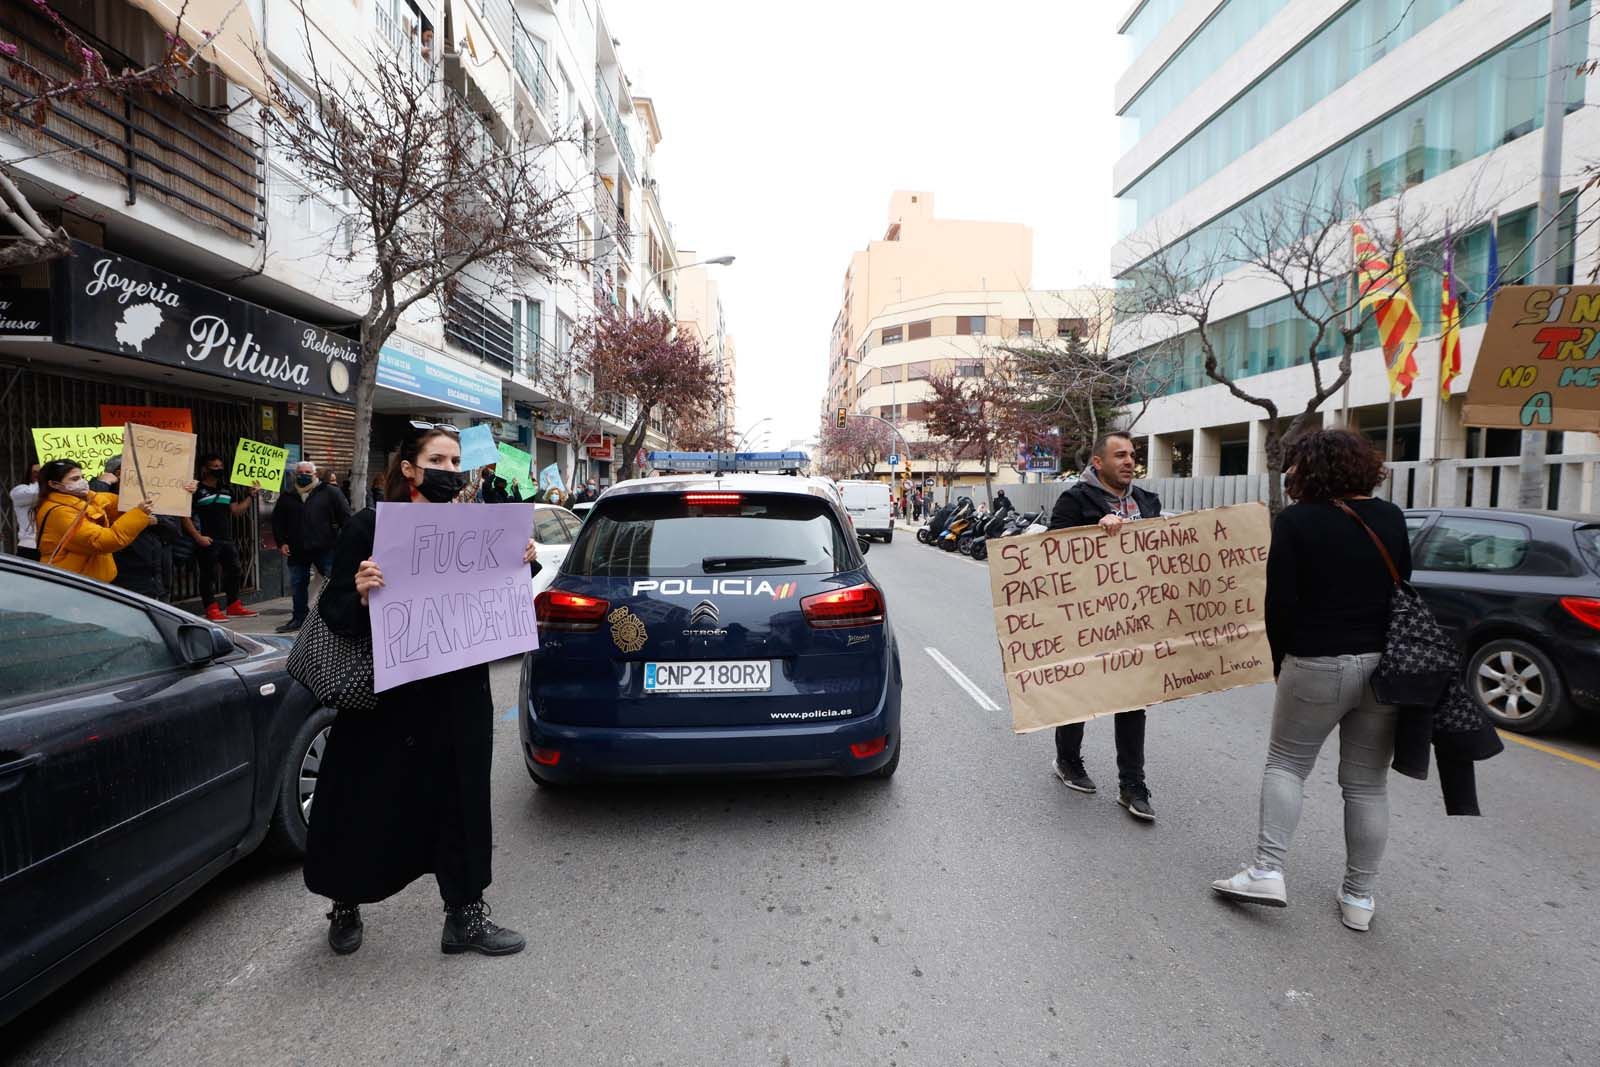 Protesta en Ibiza: "No me podéis cerrar el local y cobrarme el cien por cien de los impuestos"